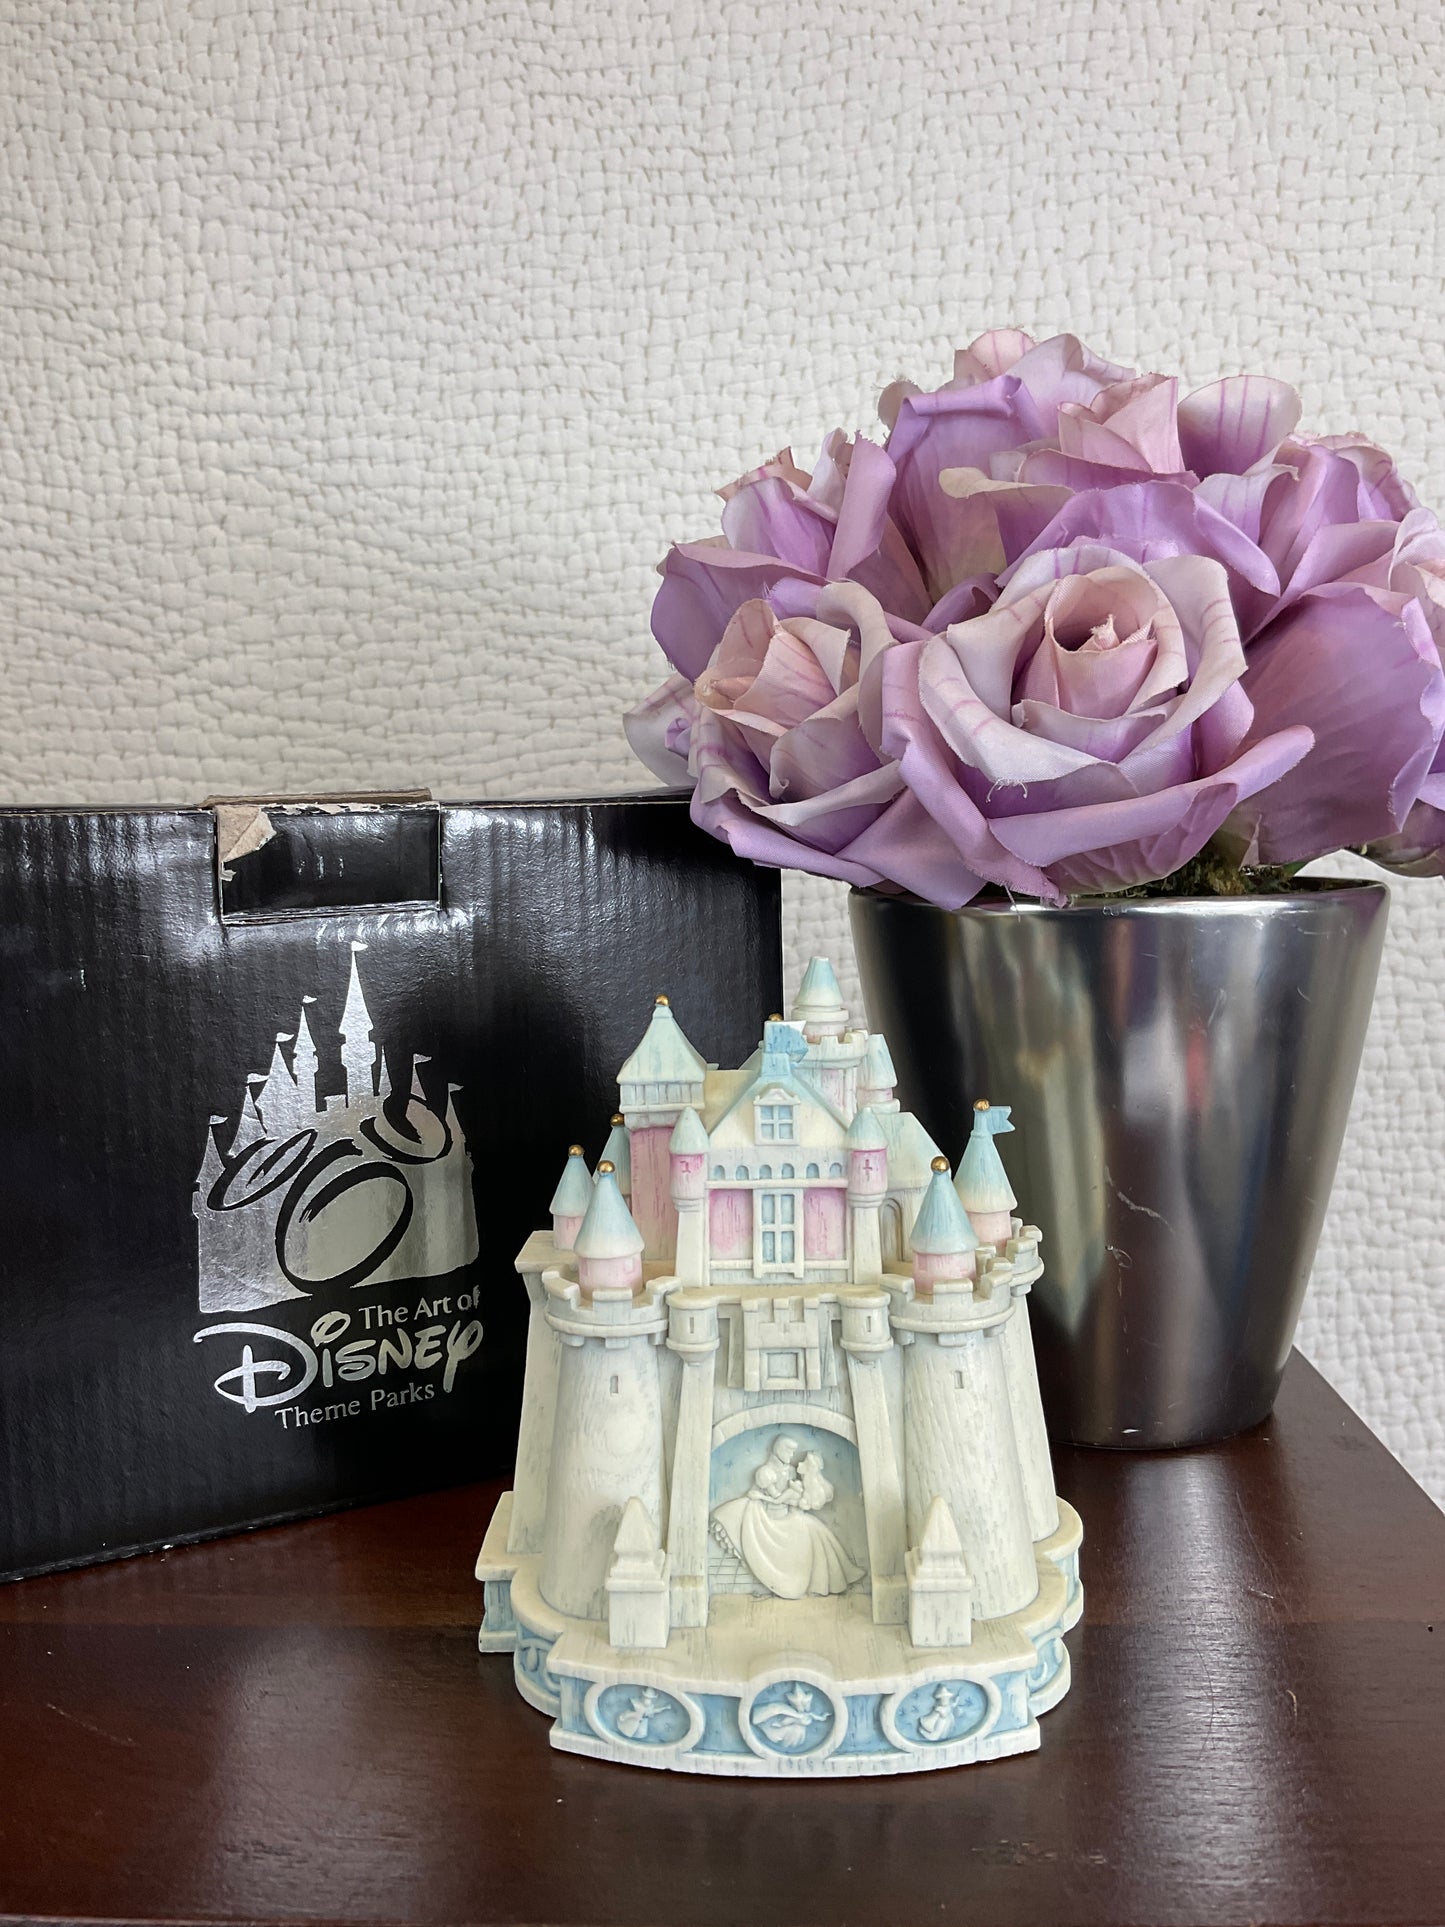 2011 Disneyland Sleeping Beauty Castle Trinket Box, Artist Robert Olszewski